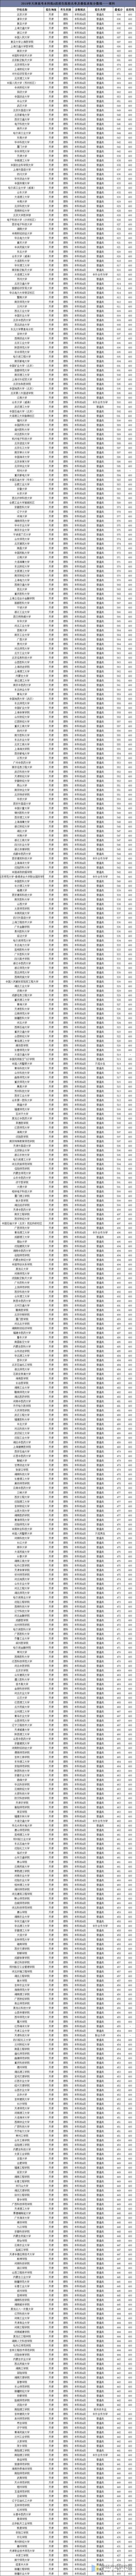 2019年天津高考本科批A段招生院校名单及最低录取分数线——理科